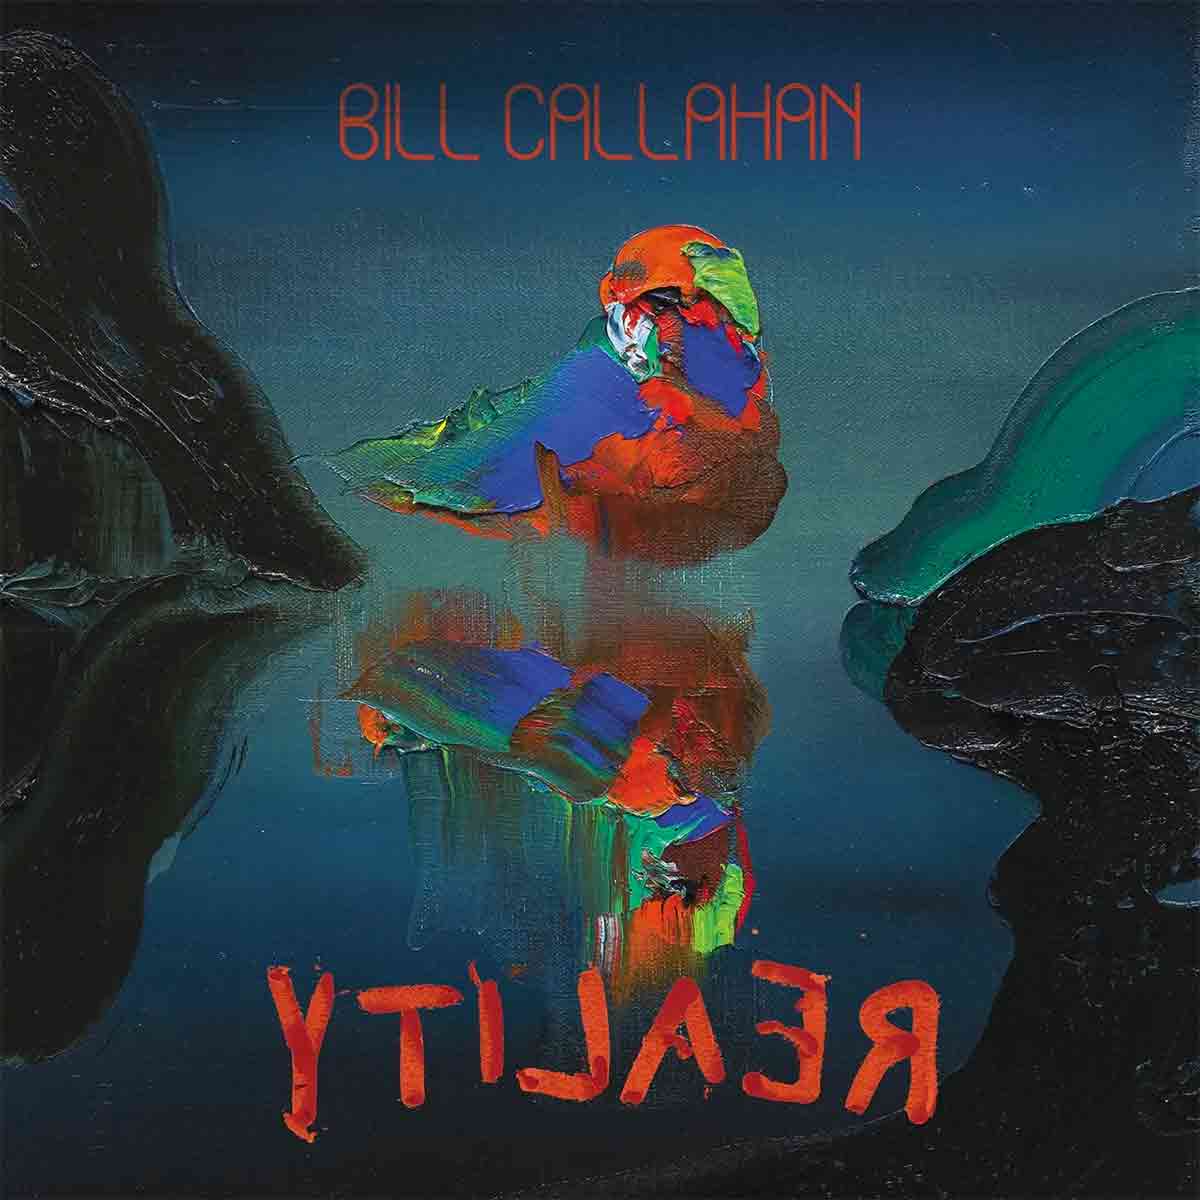 Tapa de YTILAER, disco de Bill Callahan